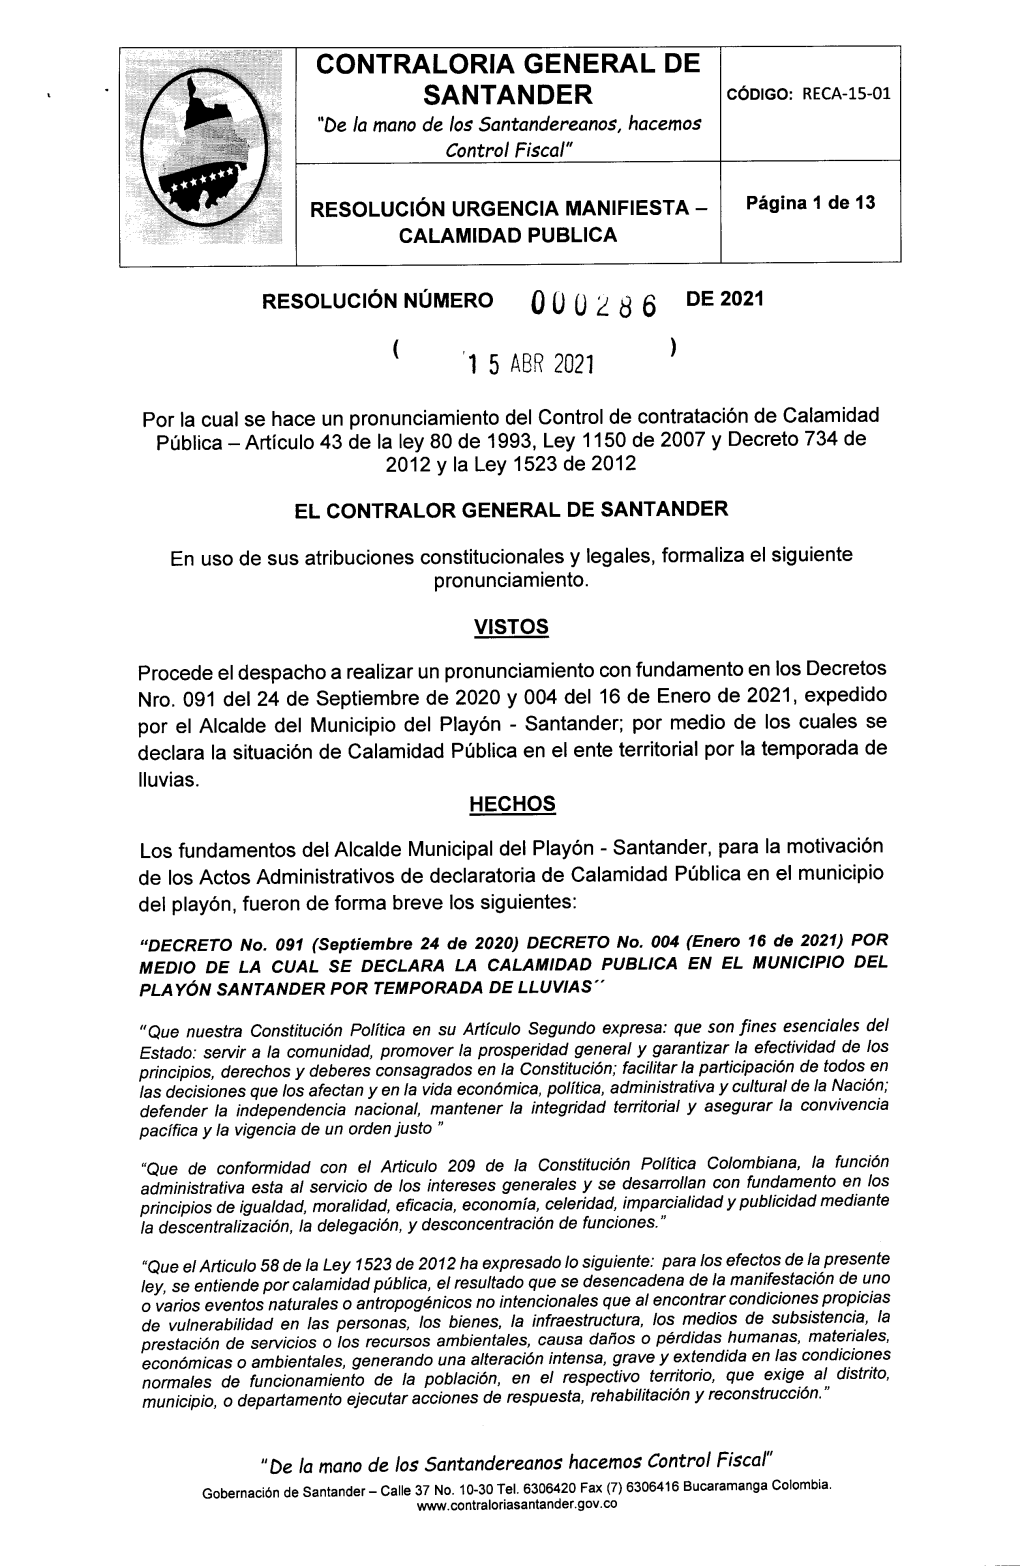 Resolucion Calamidad Publica Nro. 000286 Del 15 De Abril De 2021 Municipio Del Playon Con Recursos